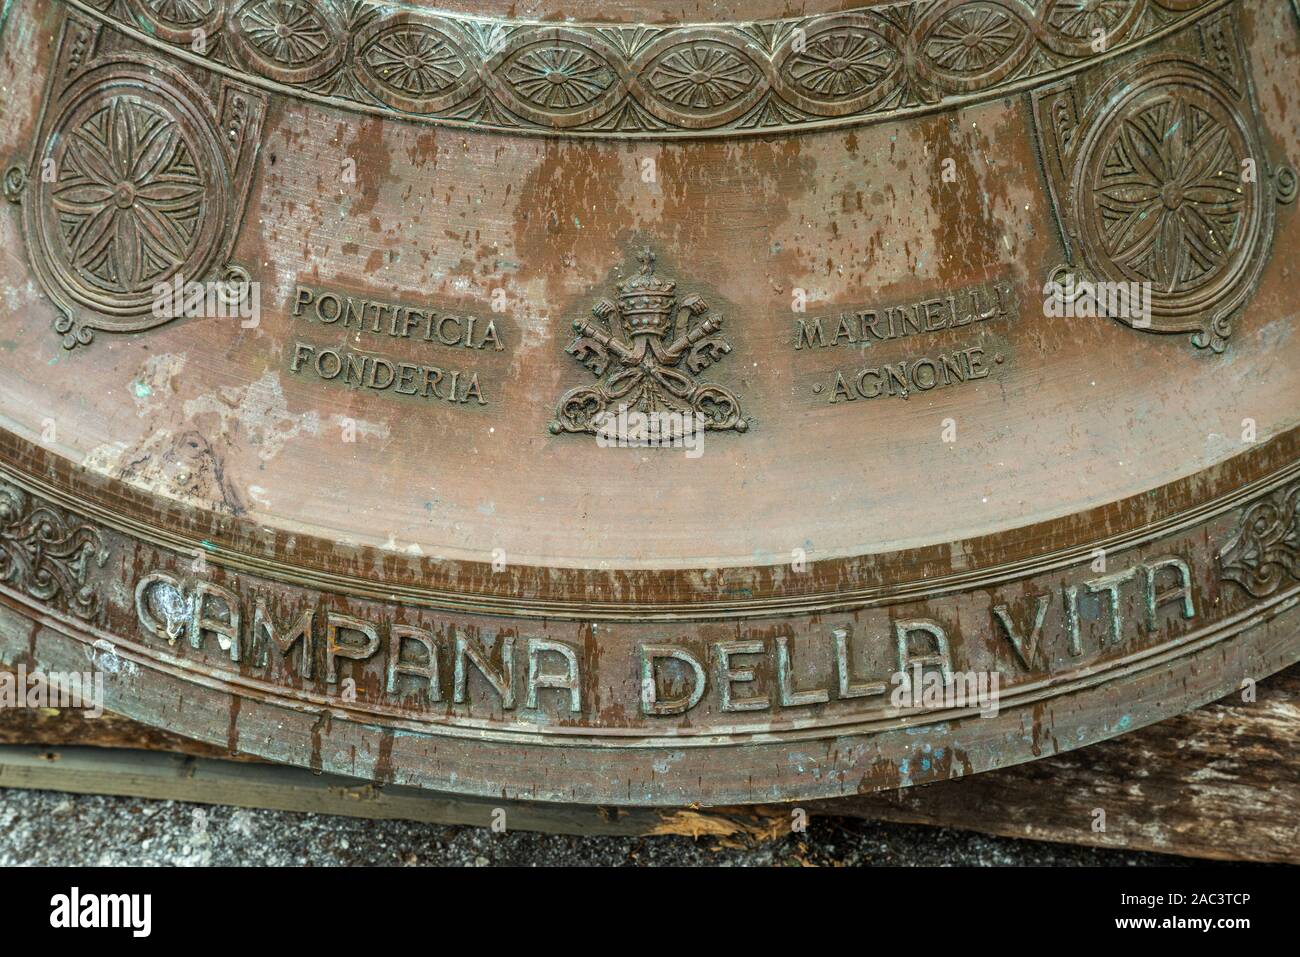 Campana della vita. Pontificia fonderia Marinelli Agnone, la più antica fabbrica di campane nel mondo Foto Stock